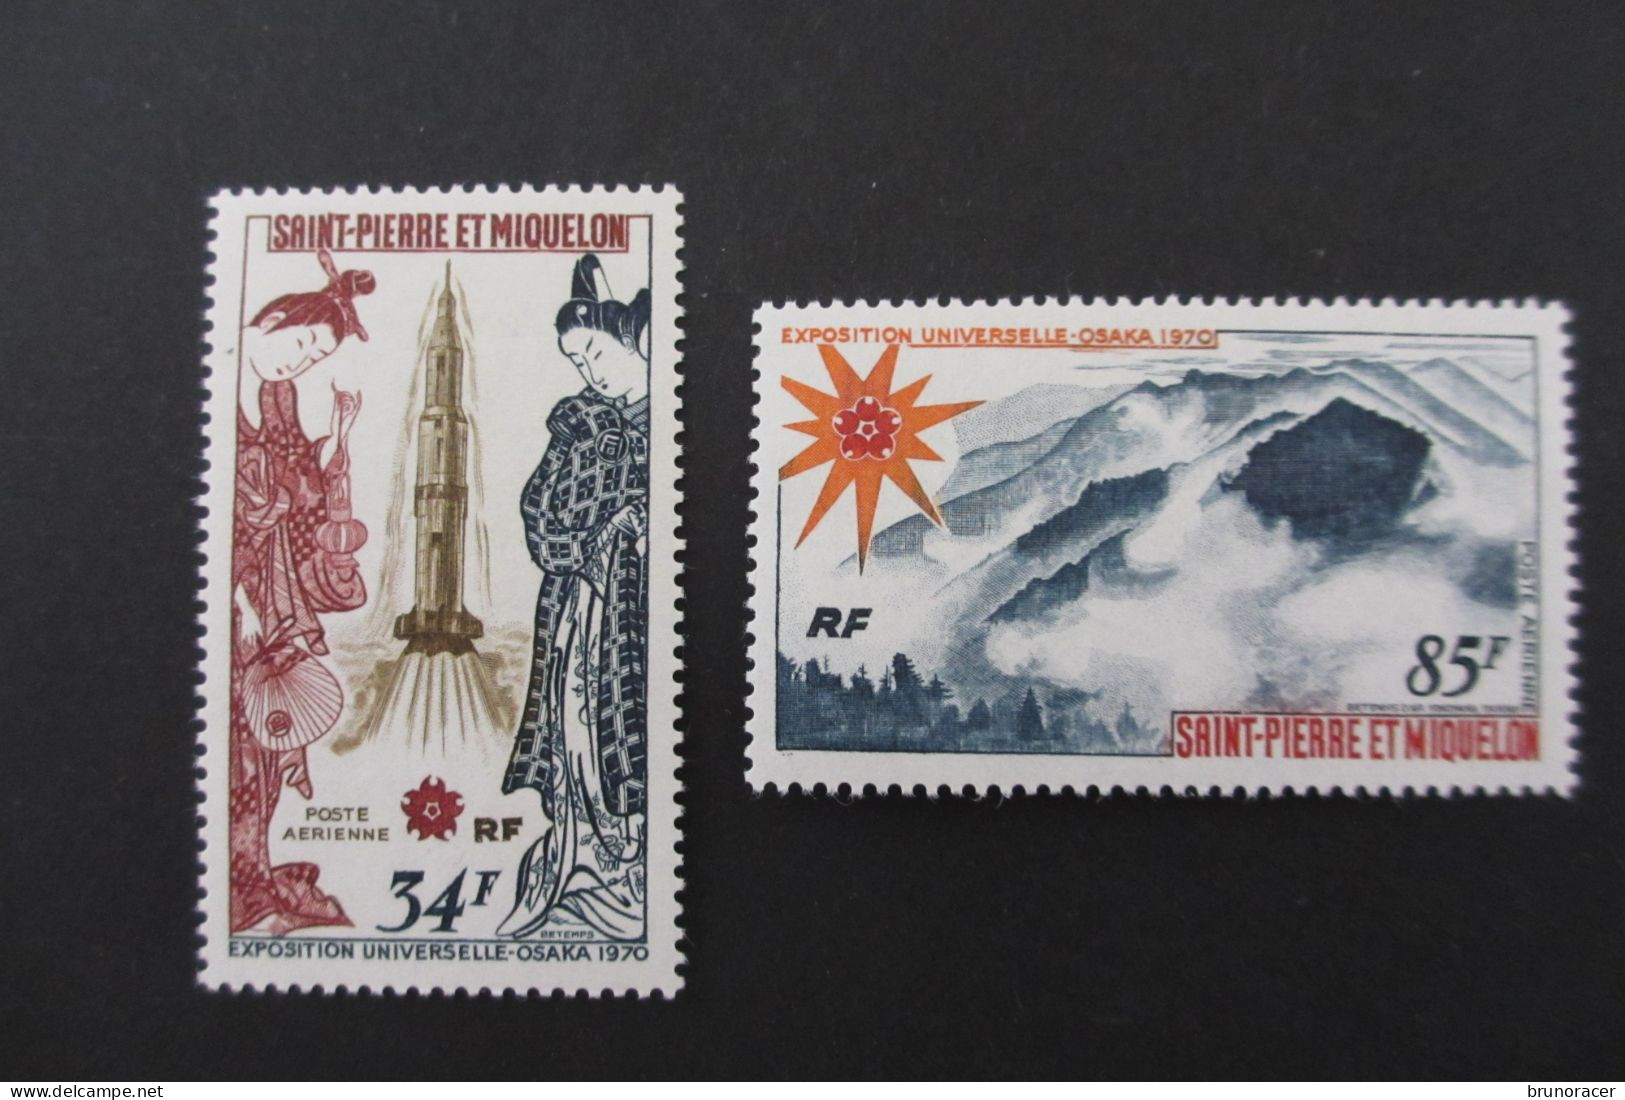 St PIERRE & MIQUELON POSTE AERIENNE N°48/49 NEUF** TTB COTE 81 EUROS  VOIR SCANS - Unused Stamps